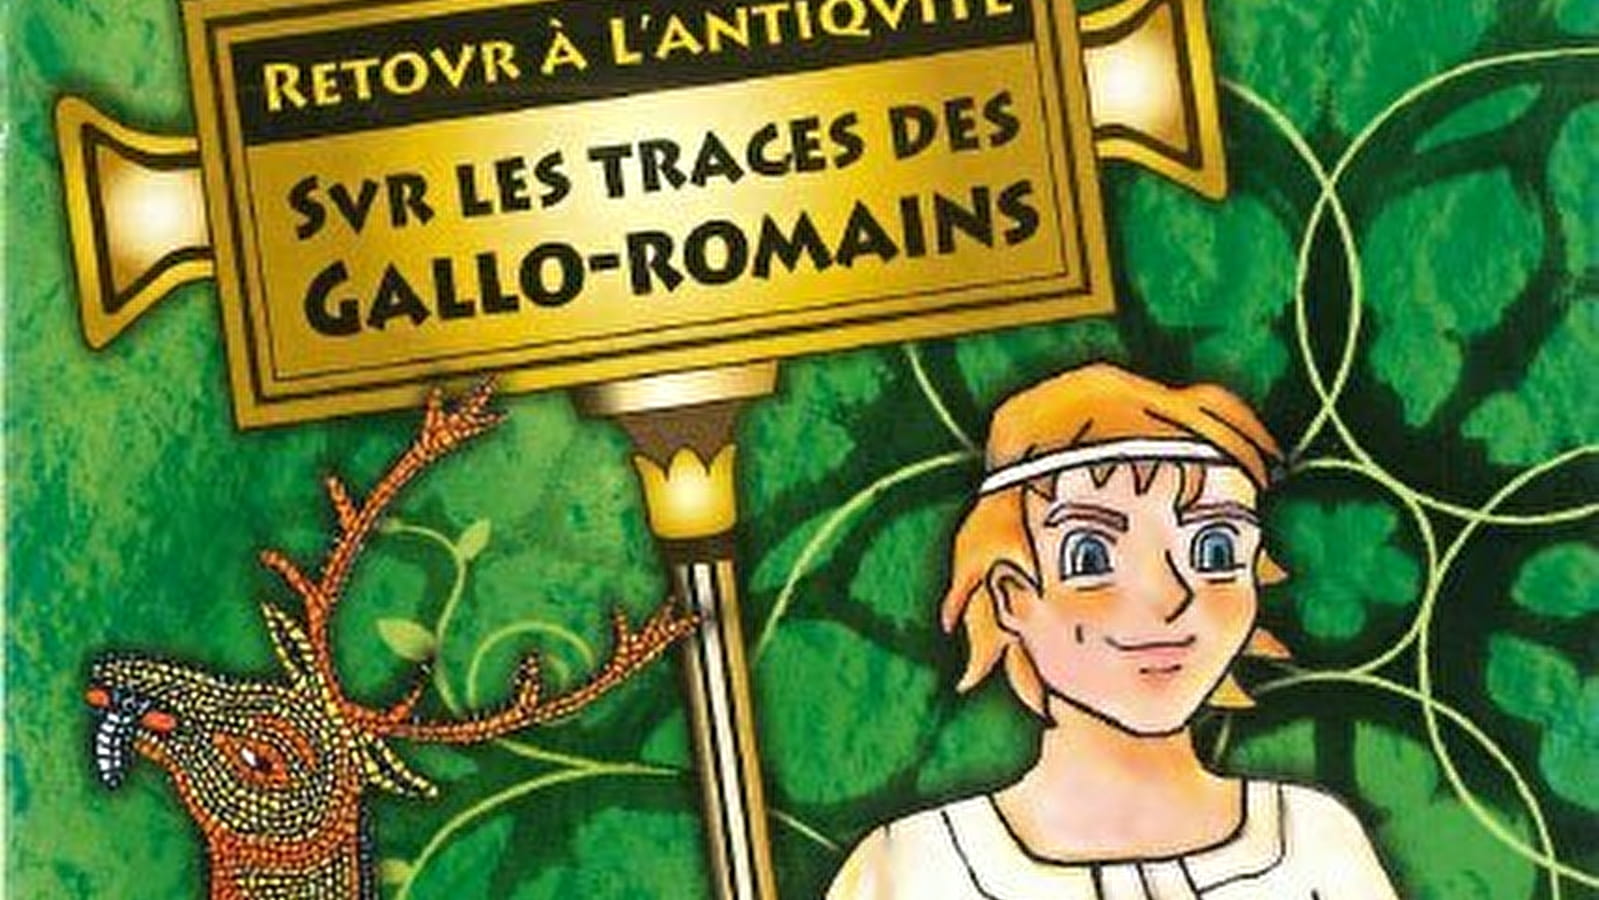 Rallye enfant 'Retour à l'Antiquité, sur les traces des gallo-romains'